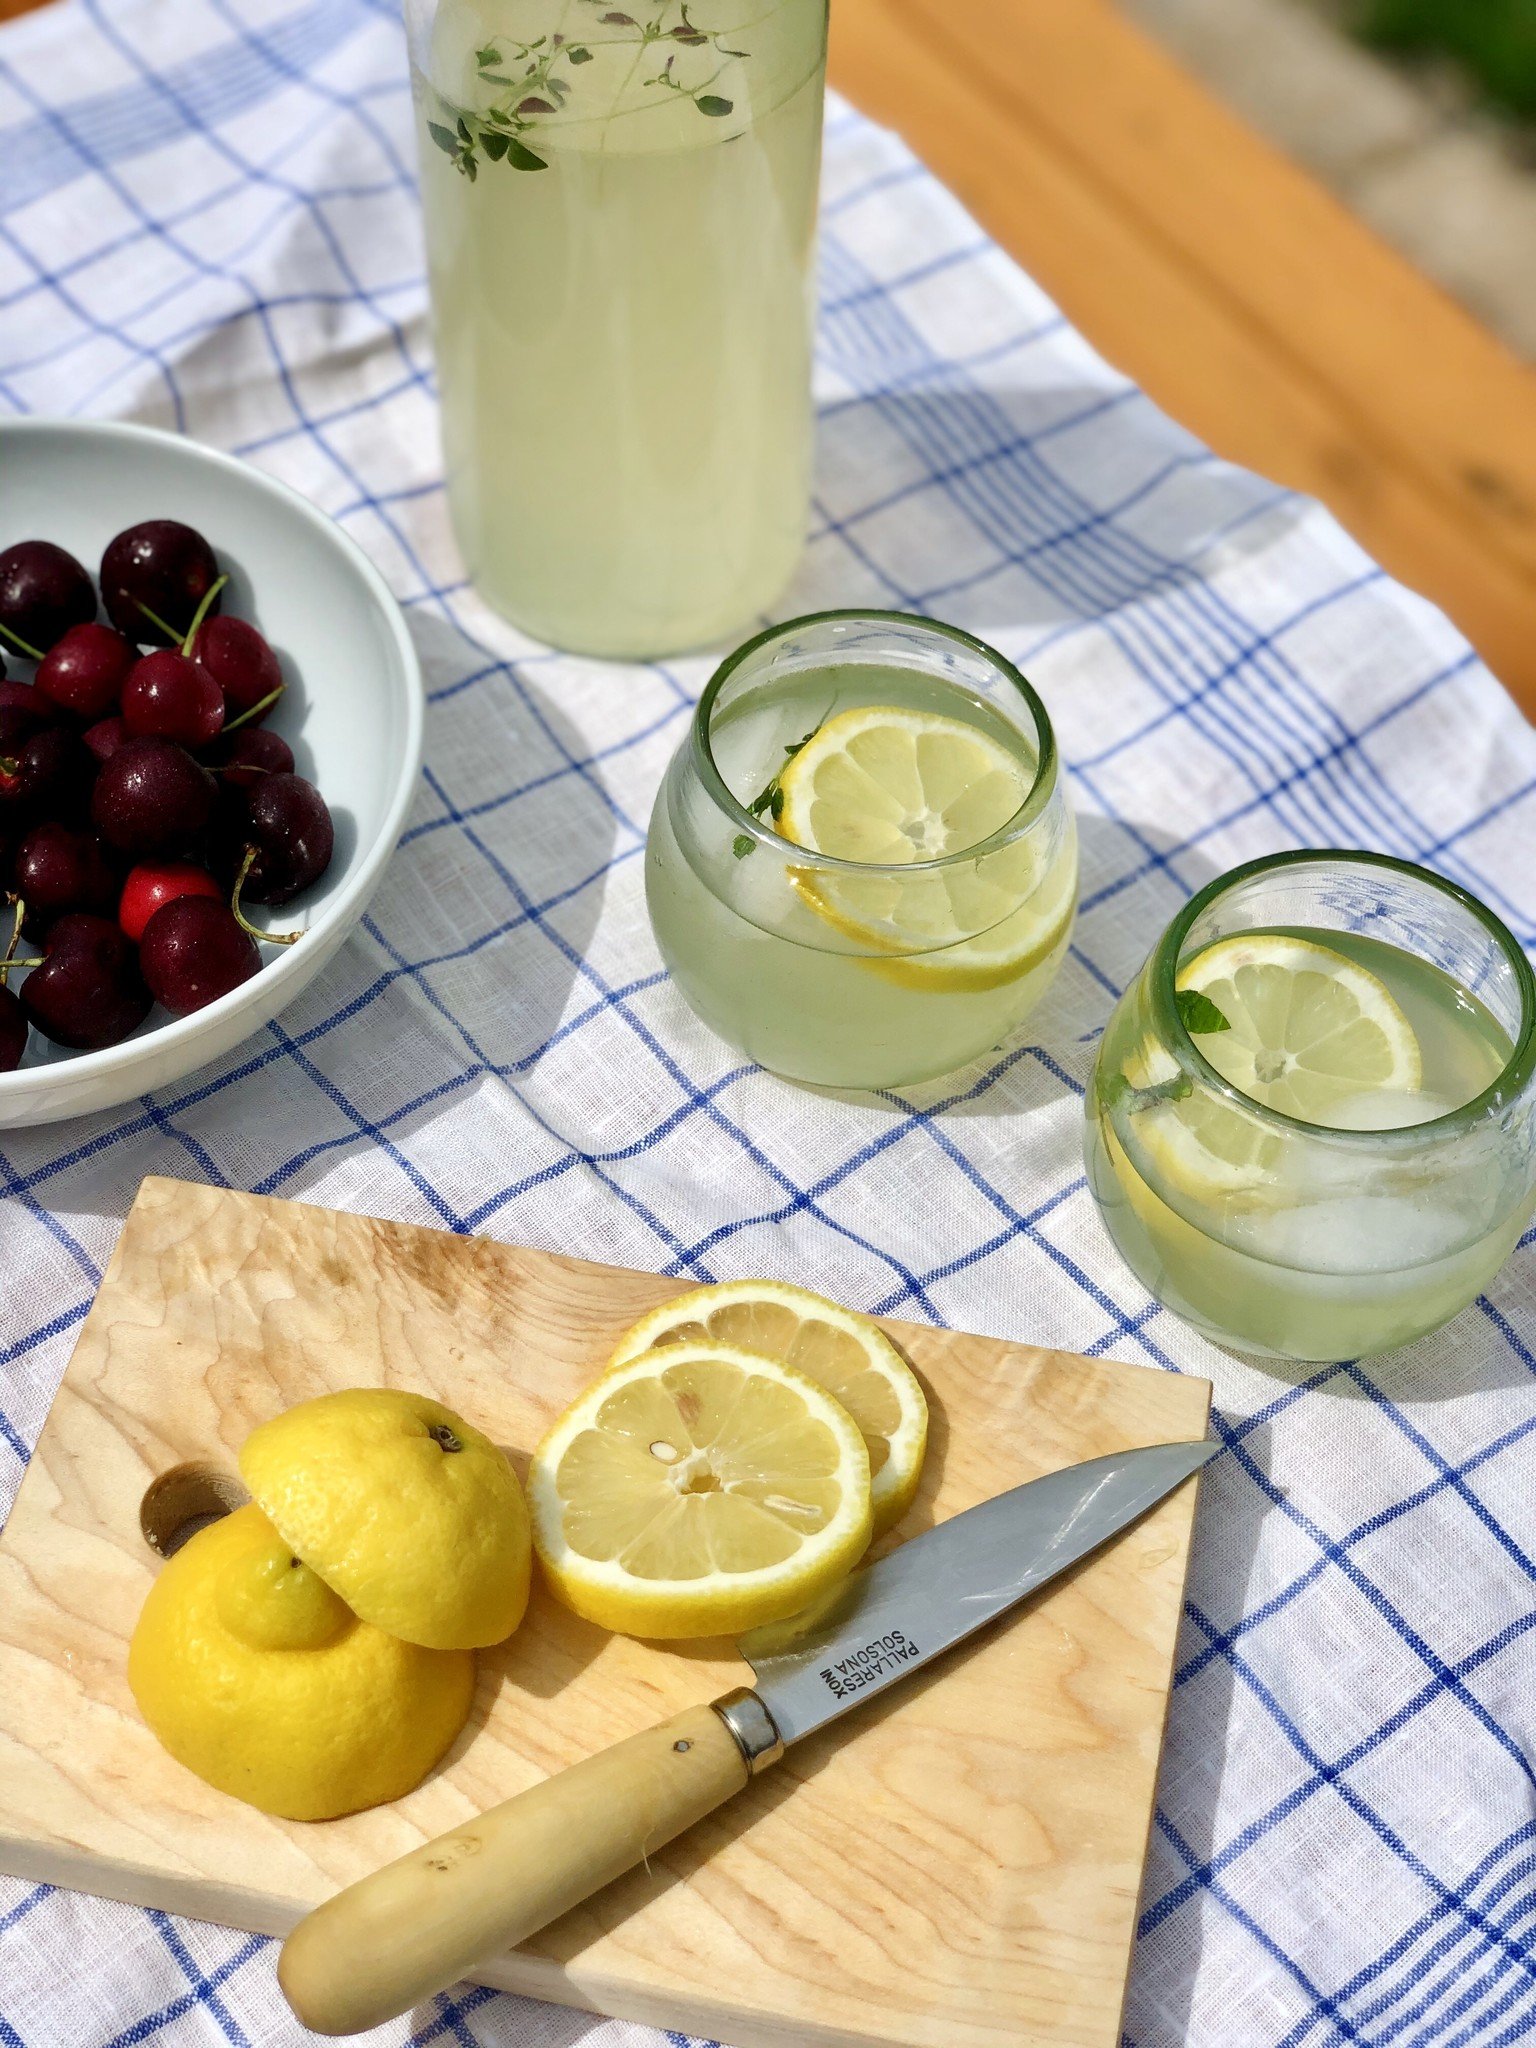 When Summer Gives You Lemons: MAKE LEMONADE!